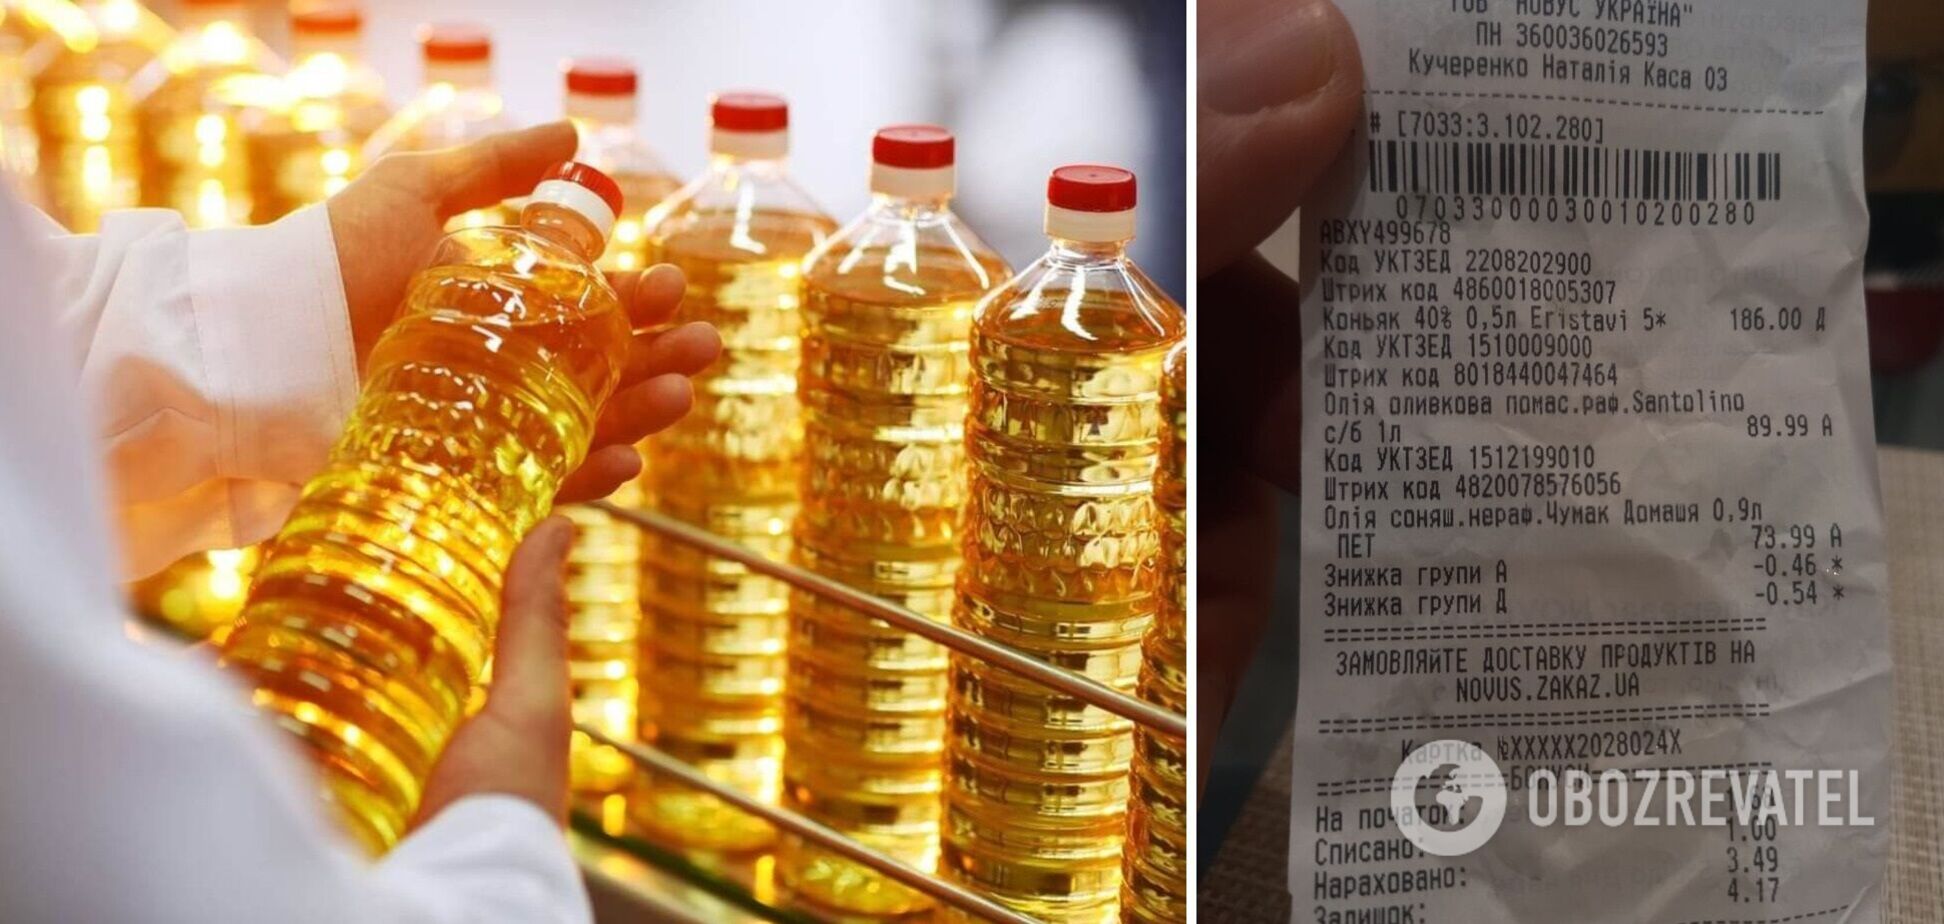 В Украине подсолнечное масло сравнялось по цене с оливковым